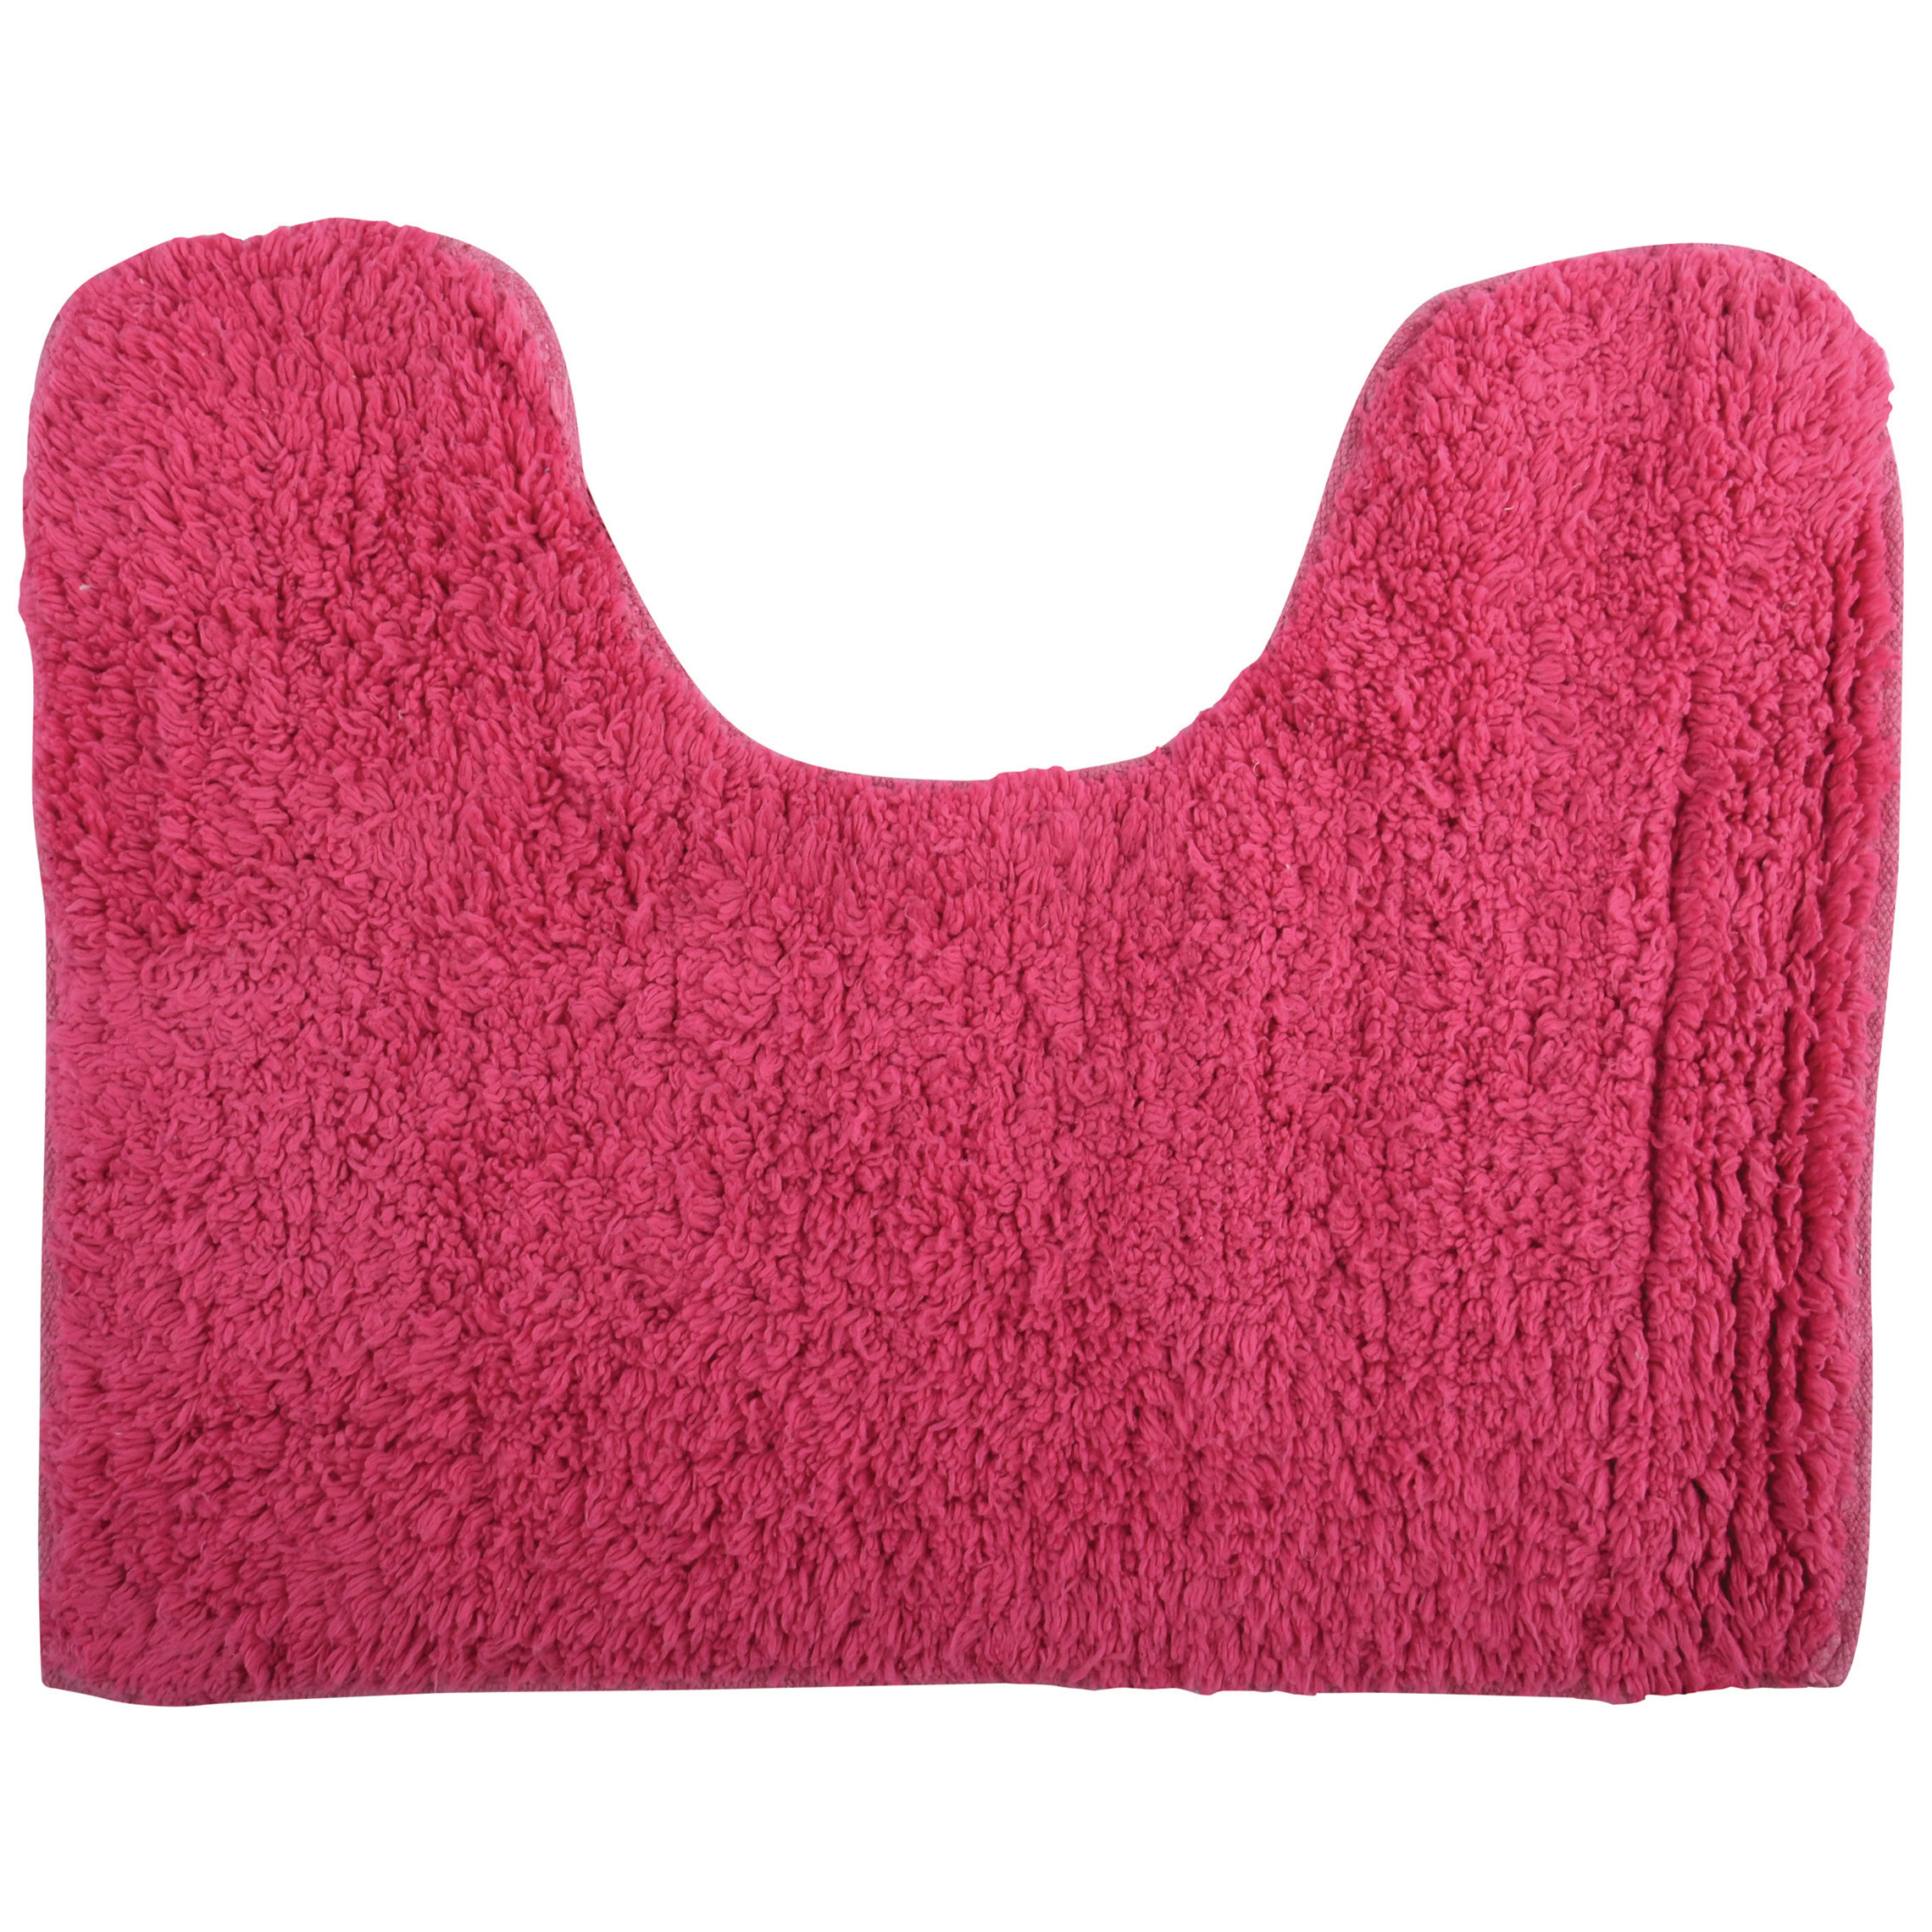 Badkamerkleedje-badmat voor op de vloer fuchsia roze 45 x 35 cm